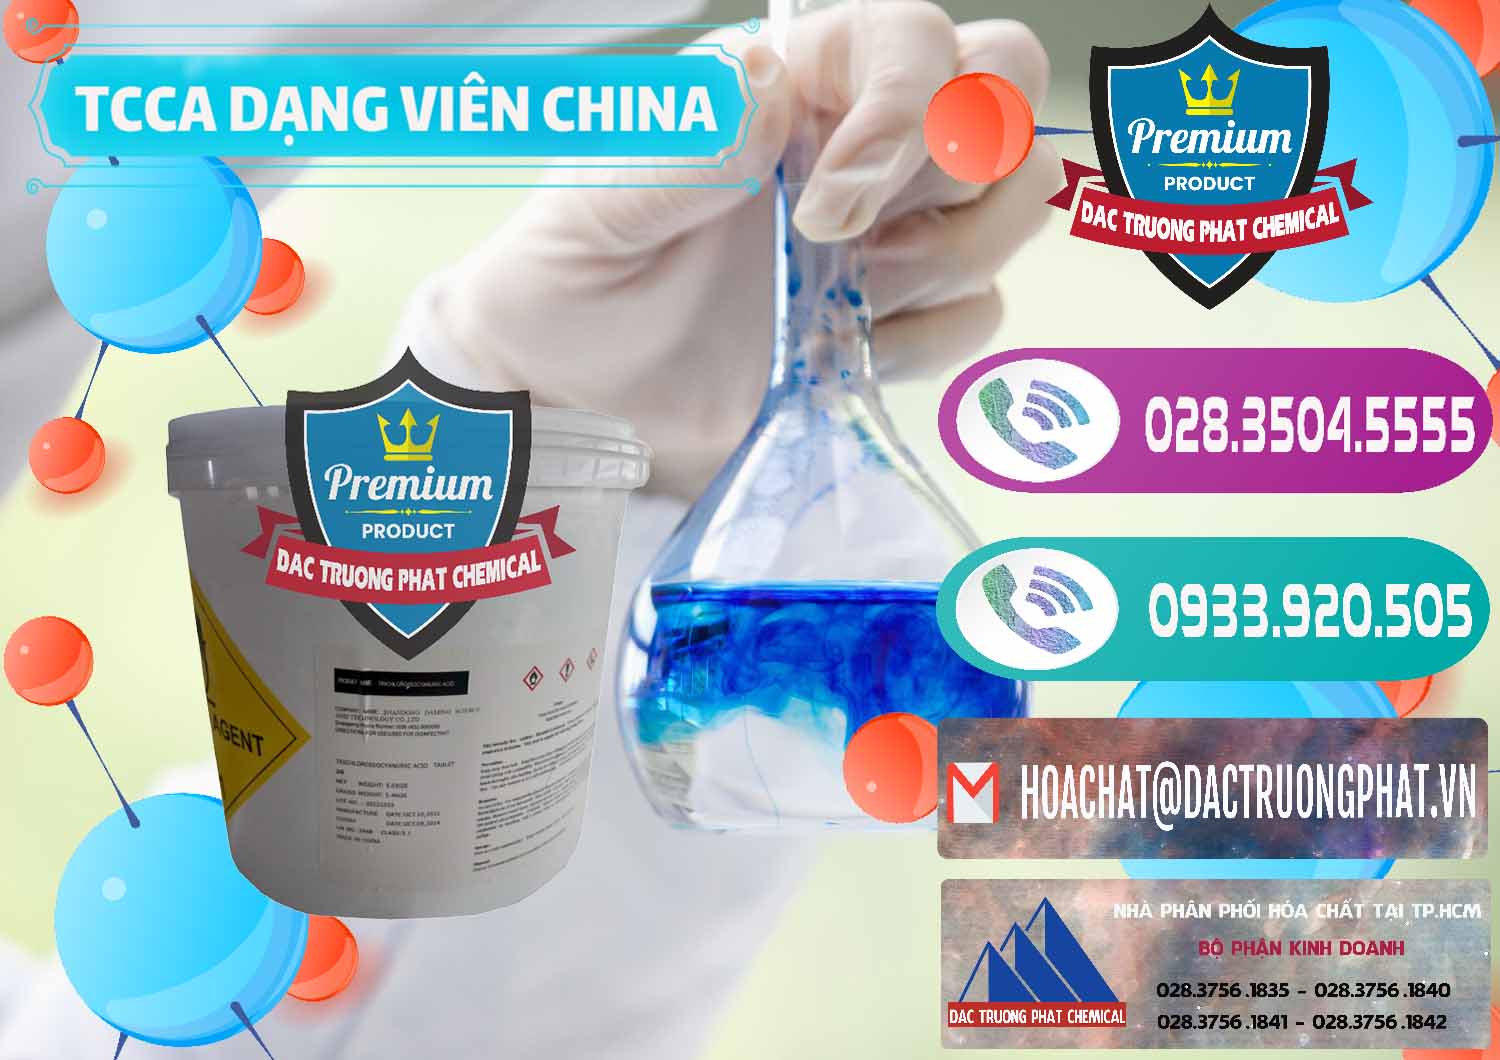 Chuyên kinh doanh _ bán TCCA - Acid Trichloroisocyanuric Dạng Viên Thùng 5kg Trung Quốc China - 0379 - Cty cung cấp & phân phối hóa chất tại TP.HCM - hoachatxulynuoc.com